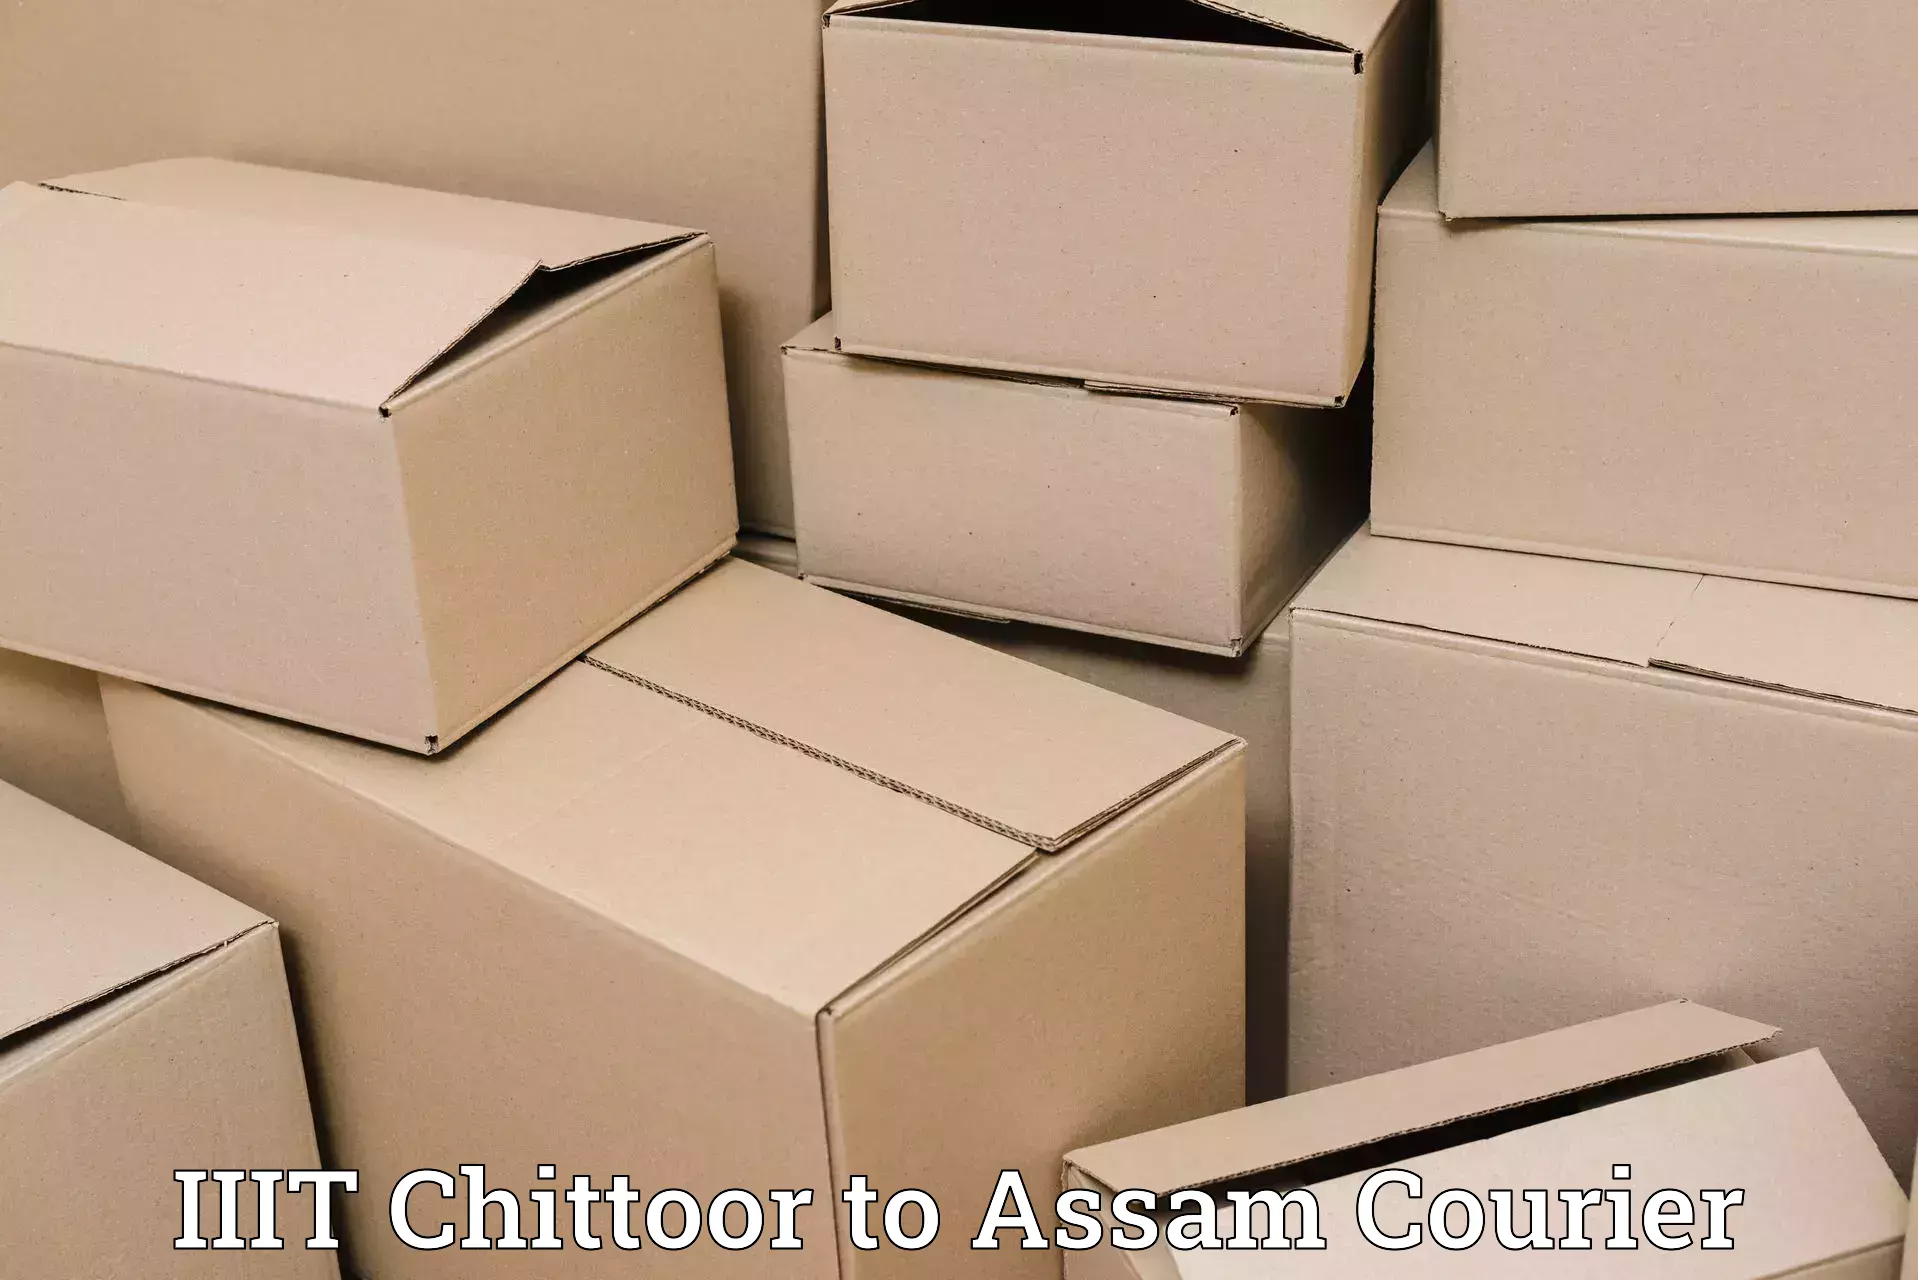 Effective logistics strategies IIIT Chittoor to Darrang